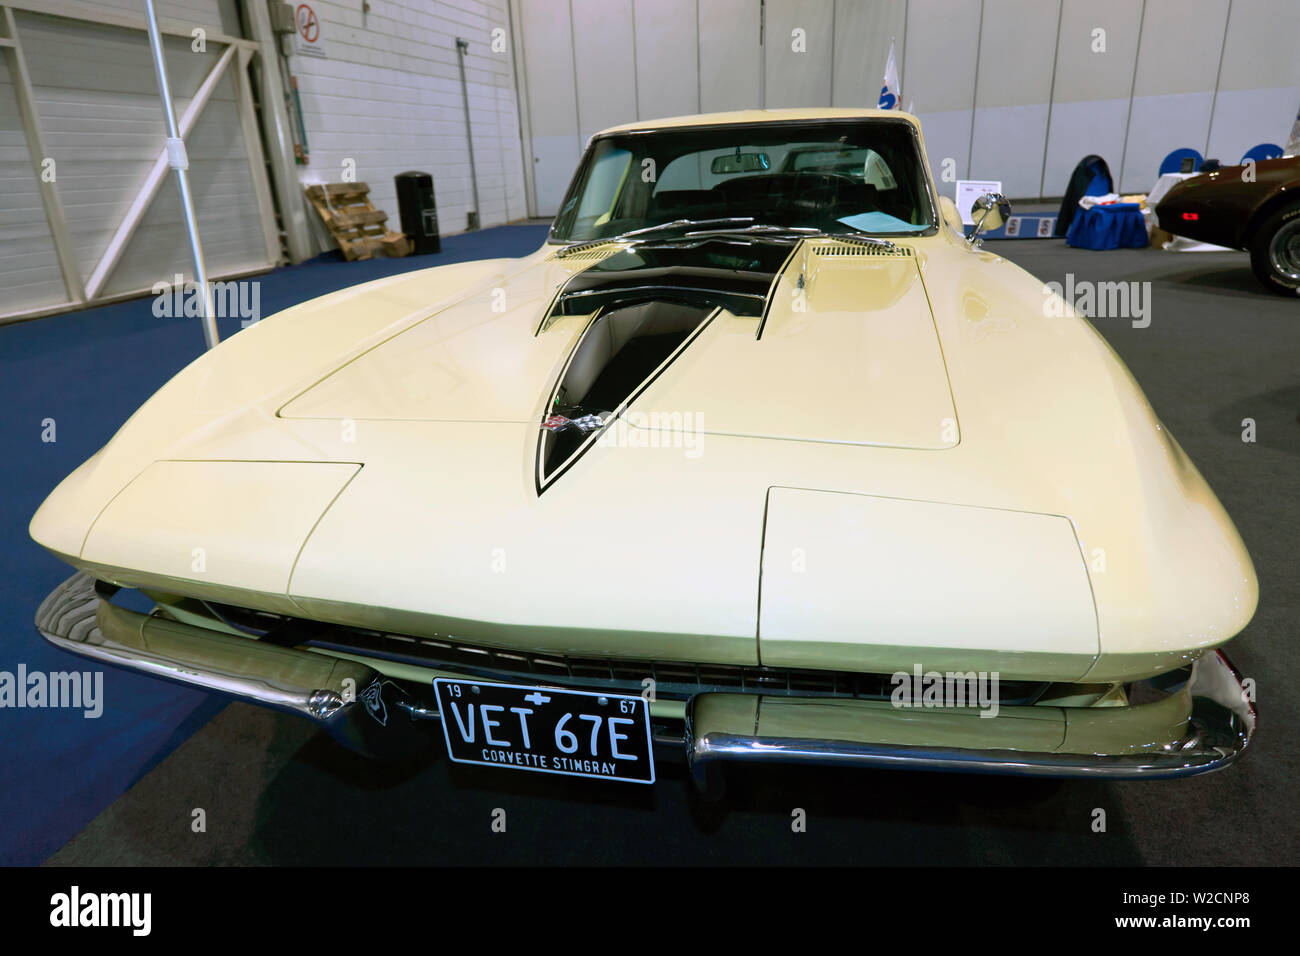 Vue frontale d'un 1967, 427, Chevrolet Corvette Sting Ray Roadster, présentée au Salon de voitures Londres 2019 Banque D'Images